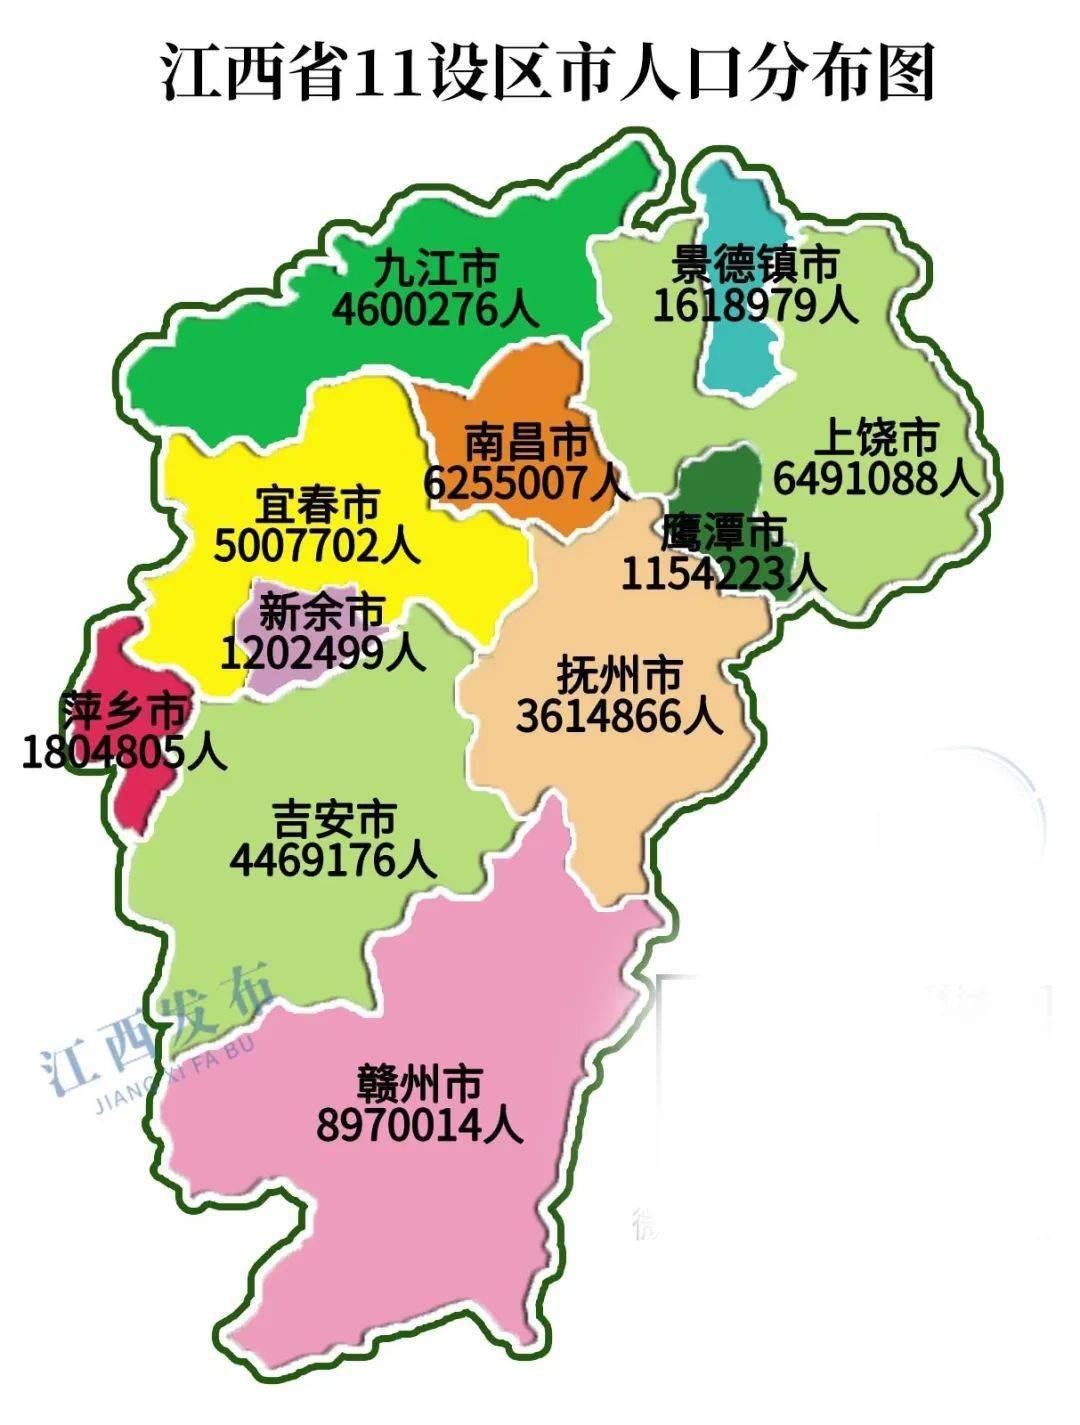 显示 根据赣州市统计局公开数据整理 按照行政区划分, 全市18个县(市